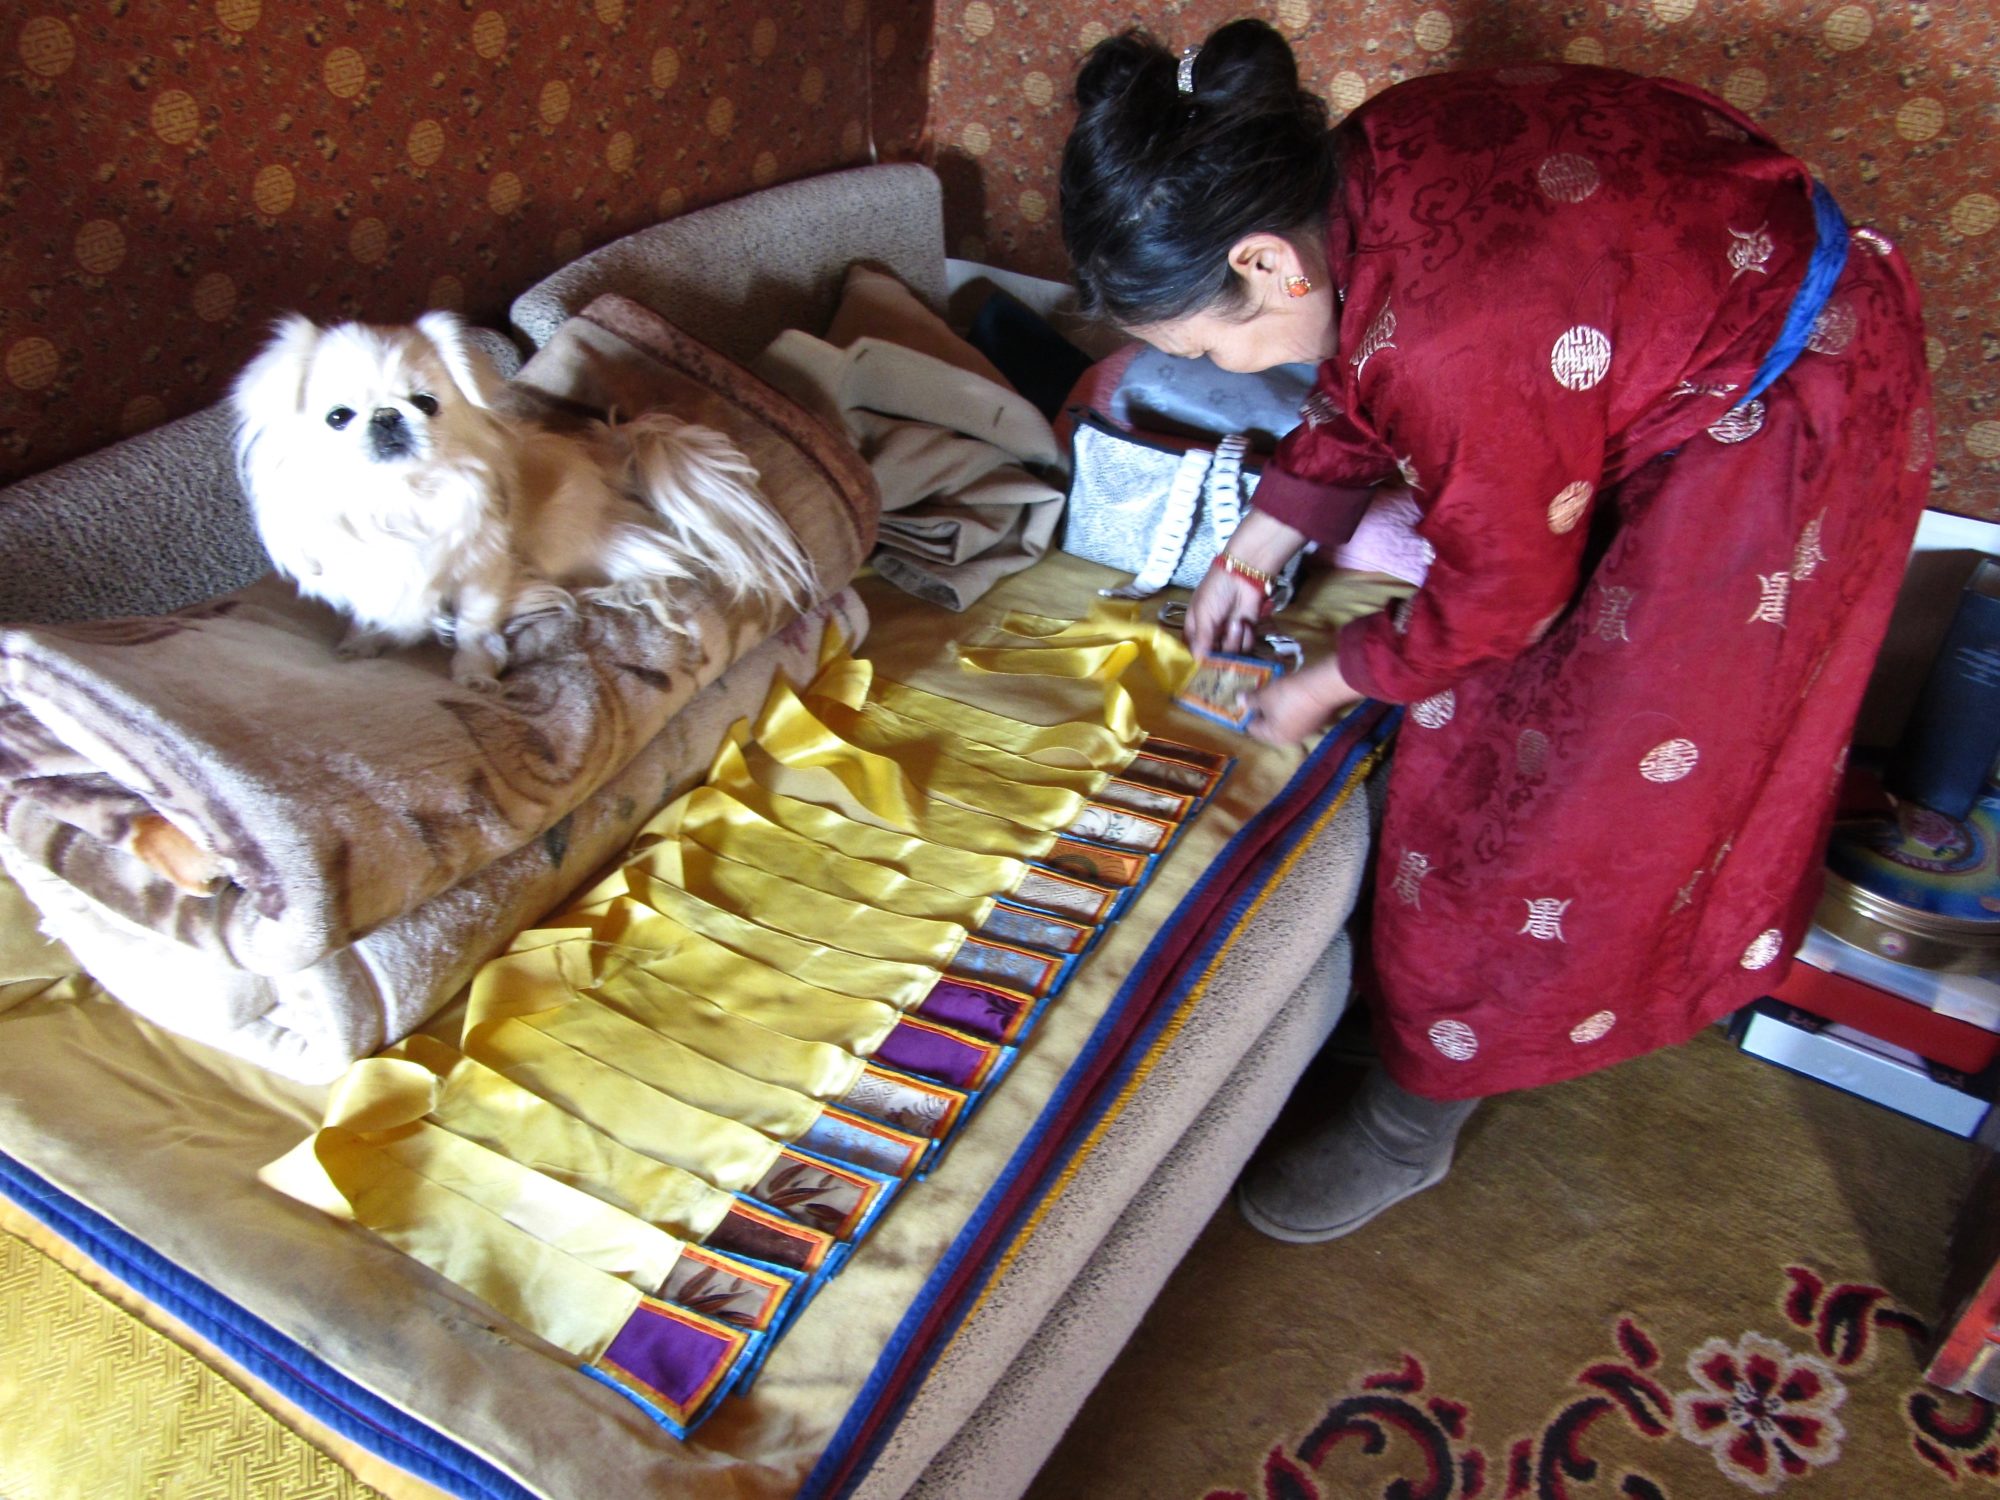 Khalkha Mongol Jantsan Gundegmaa in her kitchen-house at Delgeruun Choira in Mongolia. 9 October 2011. Photograph (2 of 5): C.Pleteshner